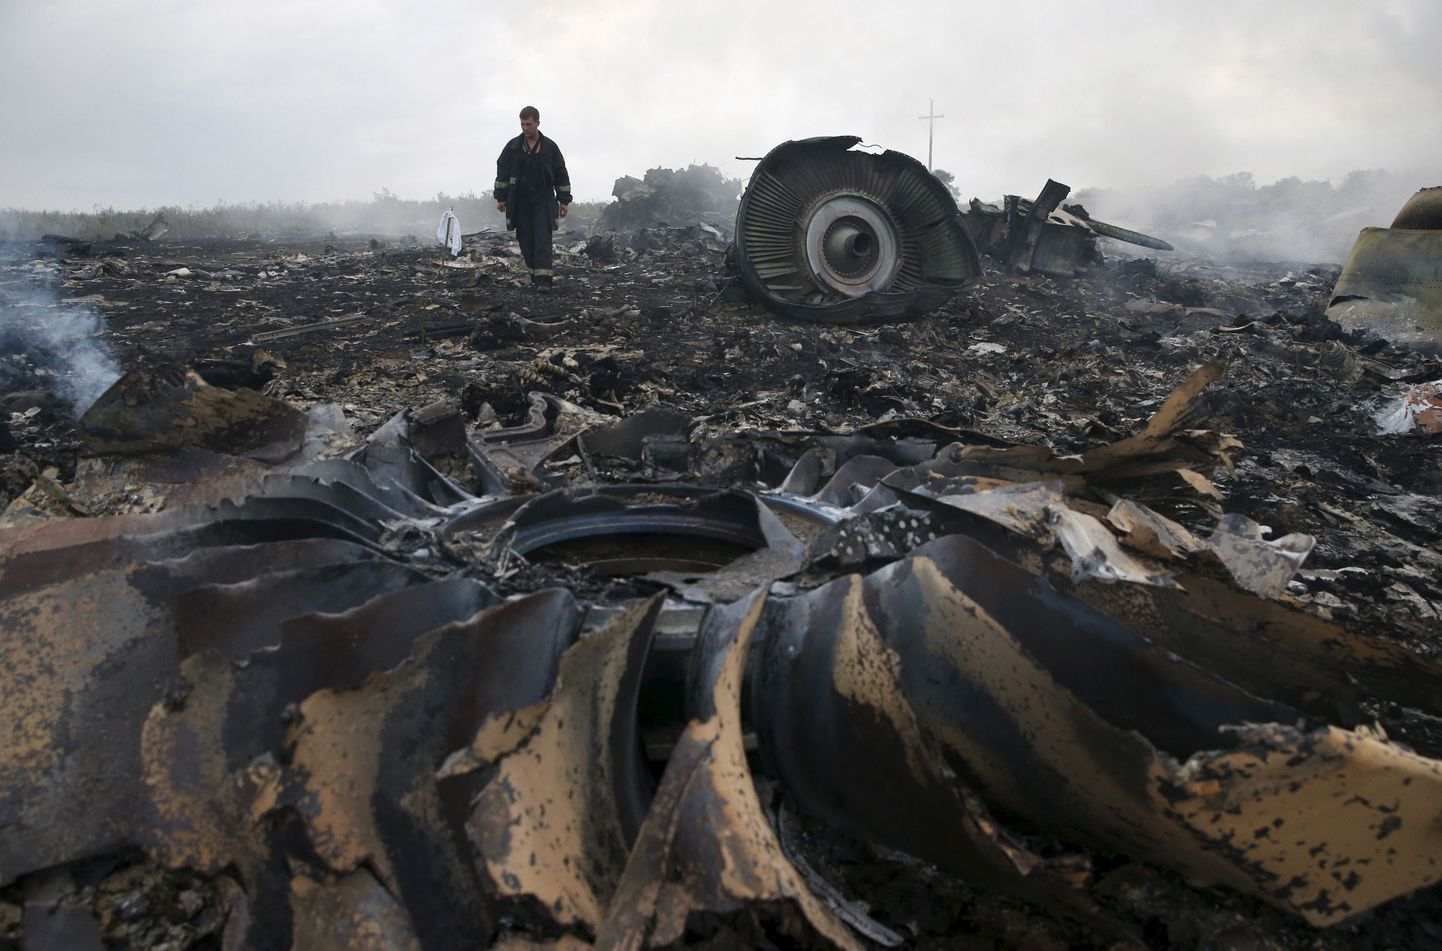 Пассажирский самолет, следовавший рейсом из Амстердама в Куала-Лумпур, был сбит 17 июля 2014 года над территорией Донецкой области Украины, где в то время происходили боевые действия.